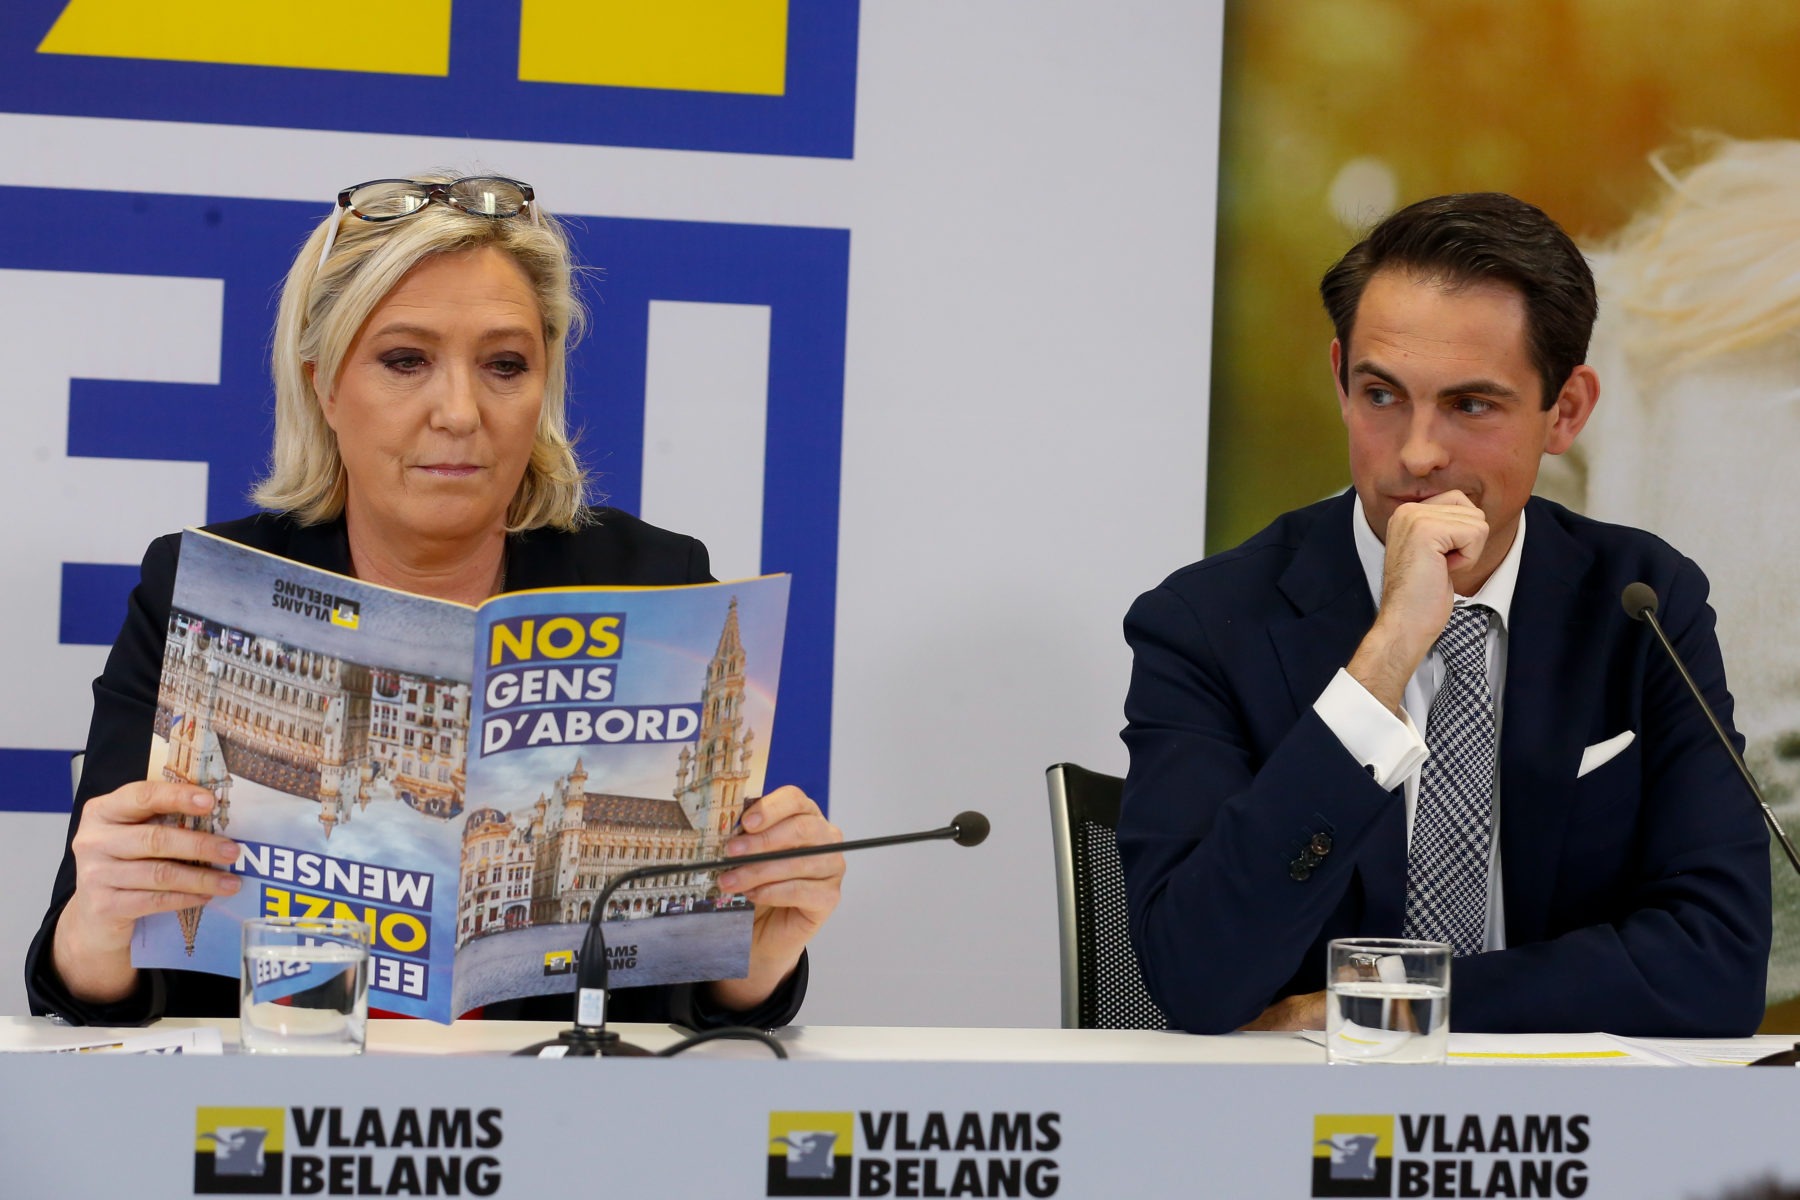 Le duel Zemmour-Le Pen déchire aussi… le Vlaams Belang  